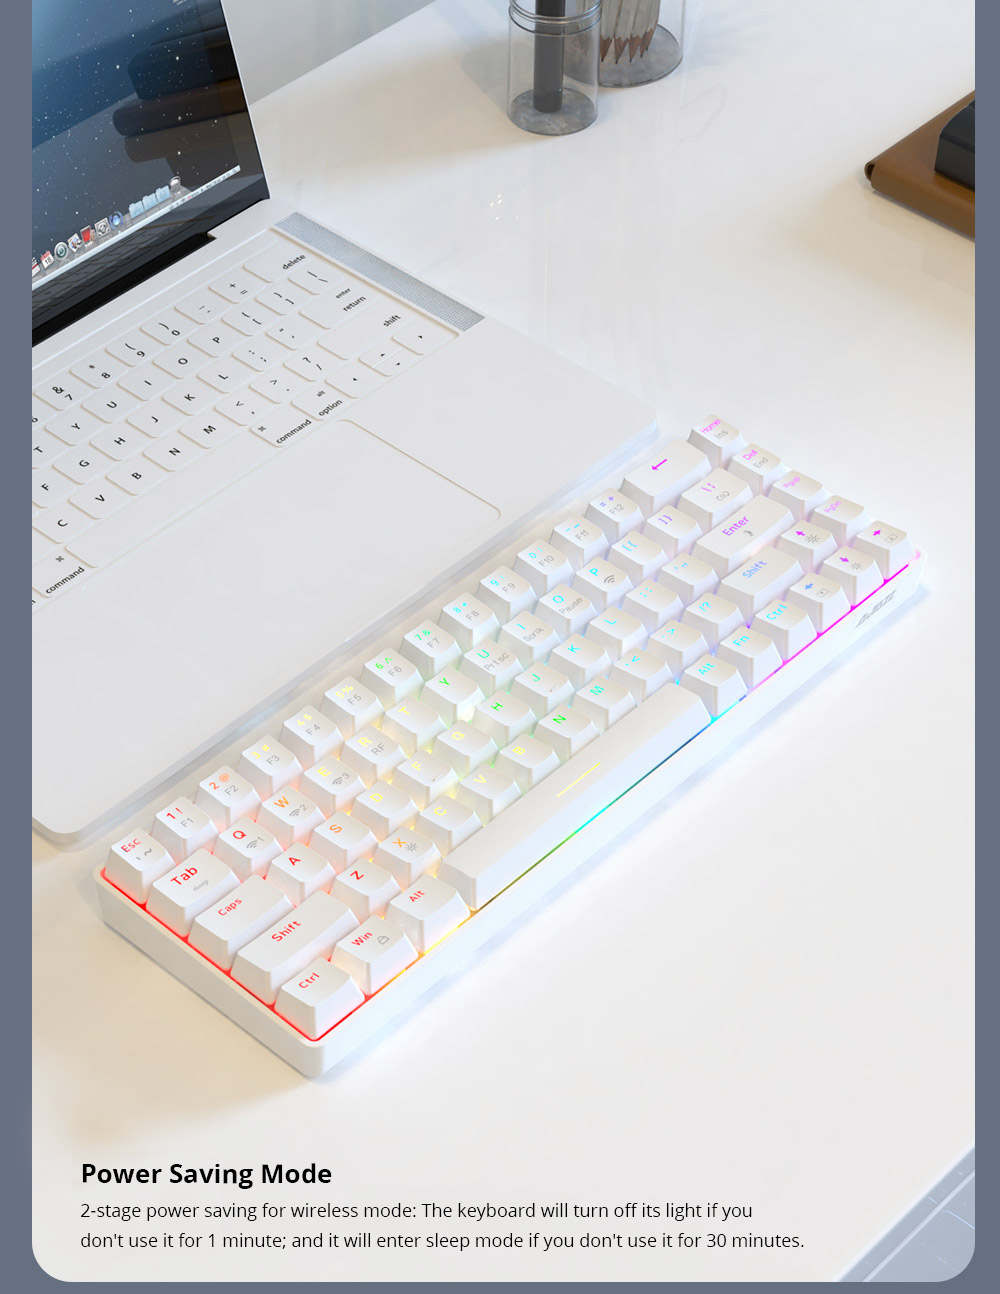 Ajazz K685T RGB لوحة مفاتيح ميكانيكية قابلة للتبديل السريع 68 مفتاحًا ، سلكية + بلوتوث + اتصال لاسلكي 2.4 جيجا هرتز ، مفتاح أحمر - أبيض